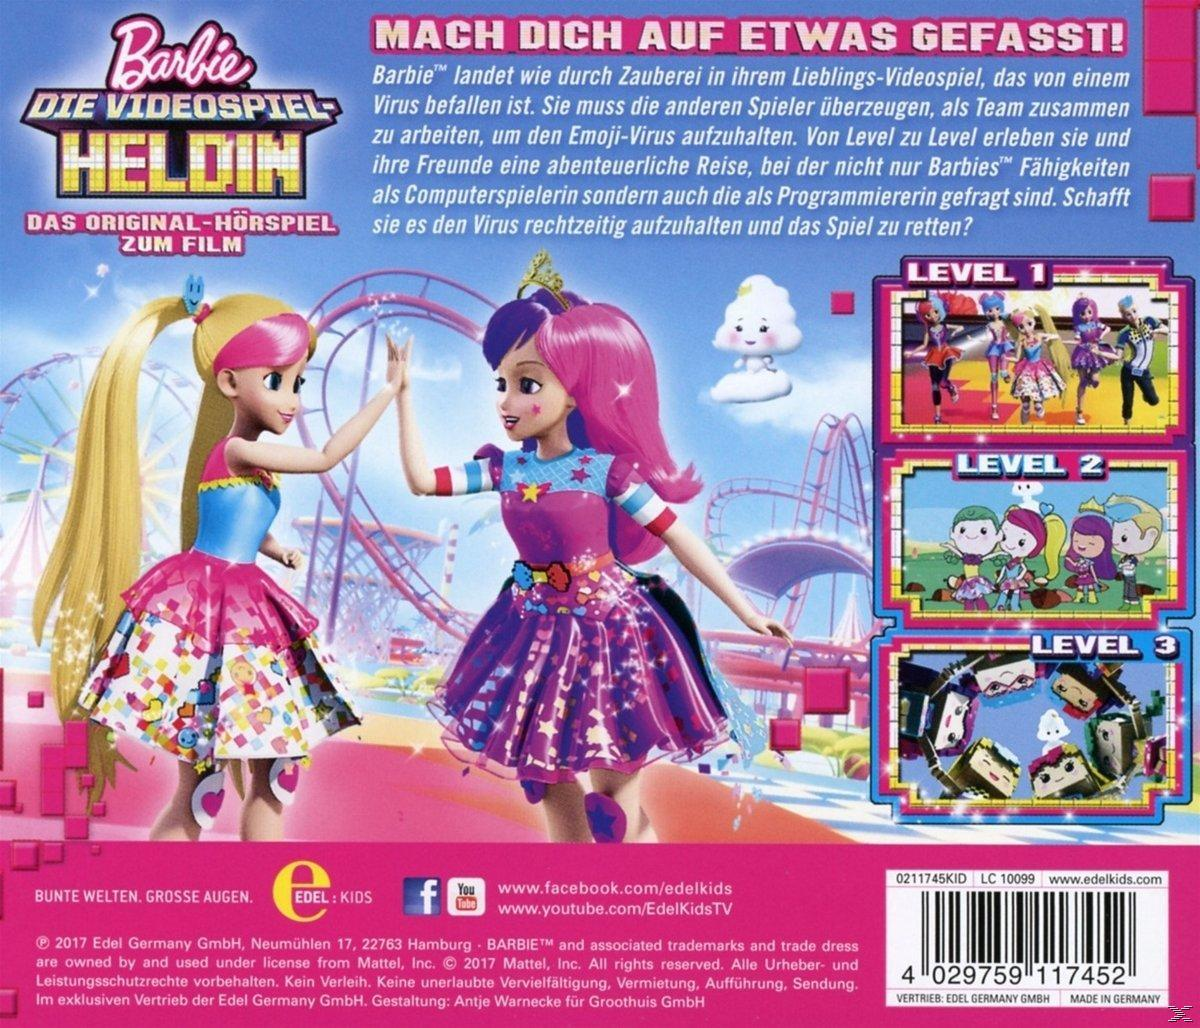 Barbie - Barbie-Die (CD) Videospiel-Heldin 